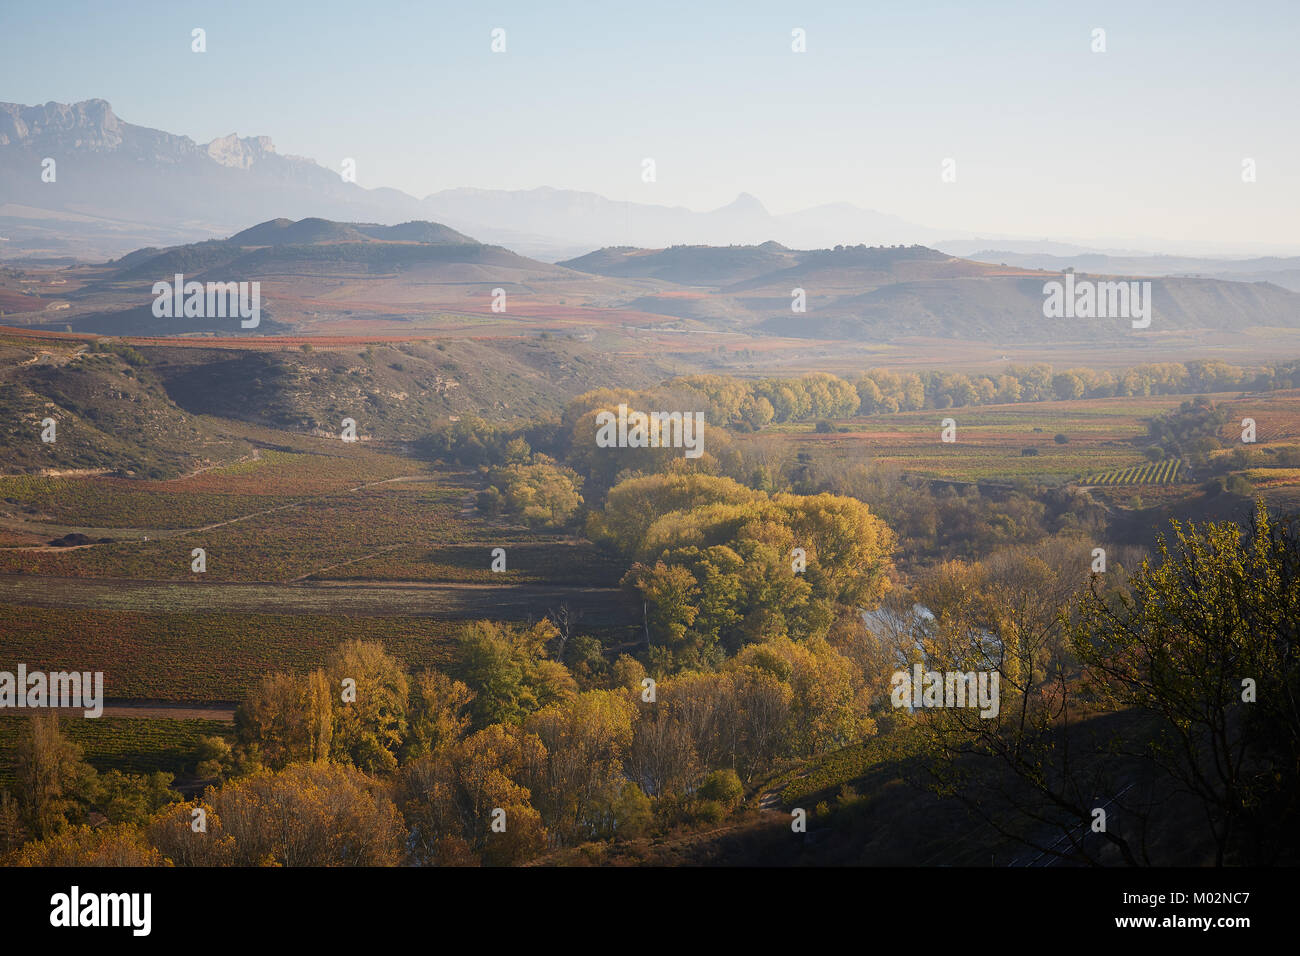 26/10/17 Rivière Ebro et les vignobles de La Rioja, près de San Asensio, La Rioja, Espagne. Photo de James Sturcke | sturcke.org Banque D'Images